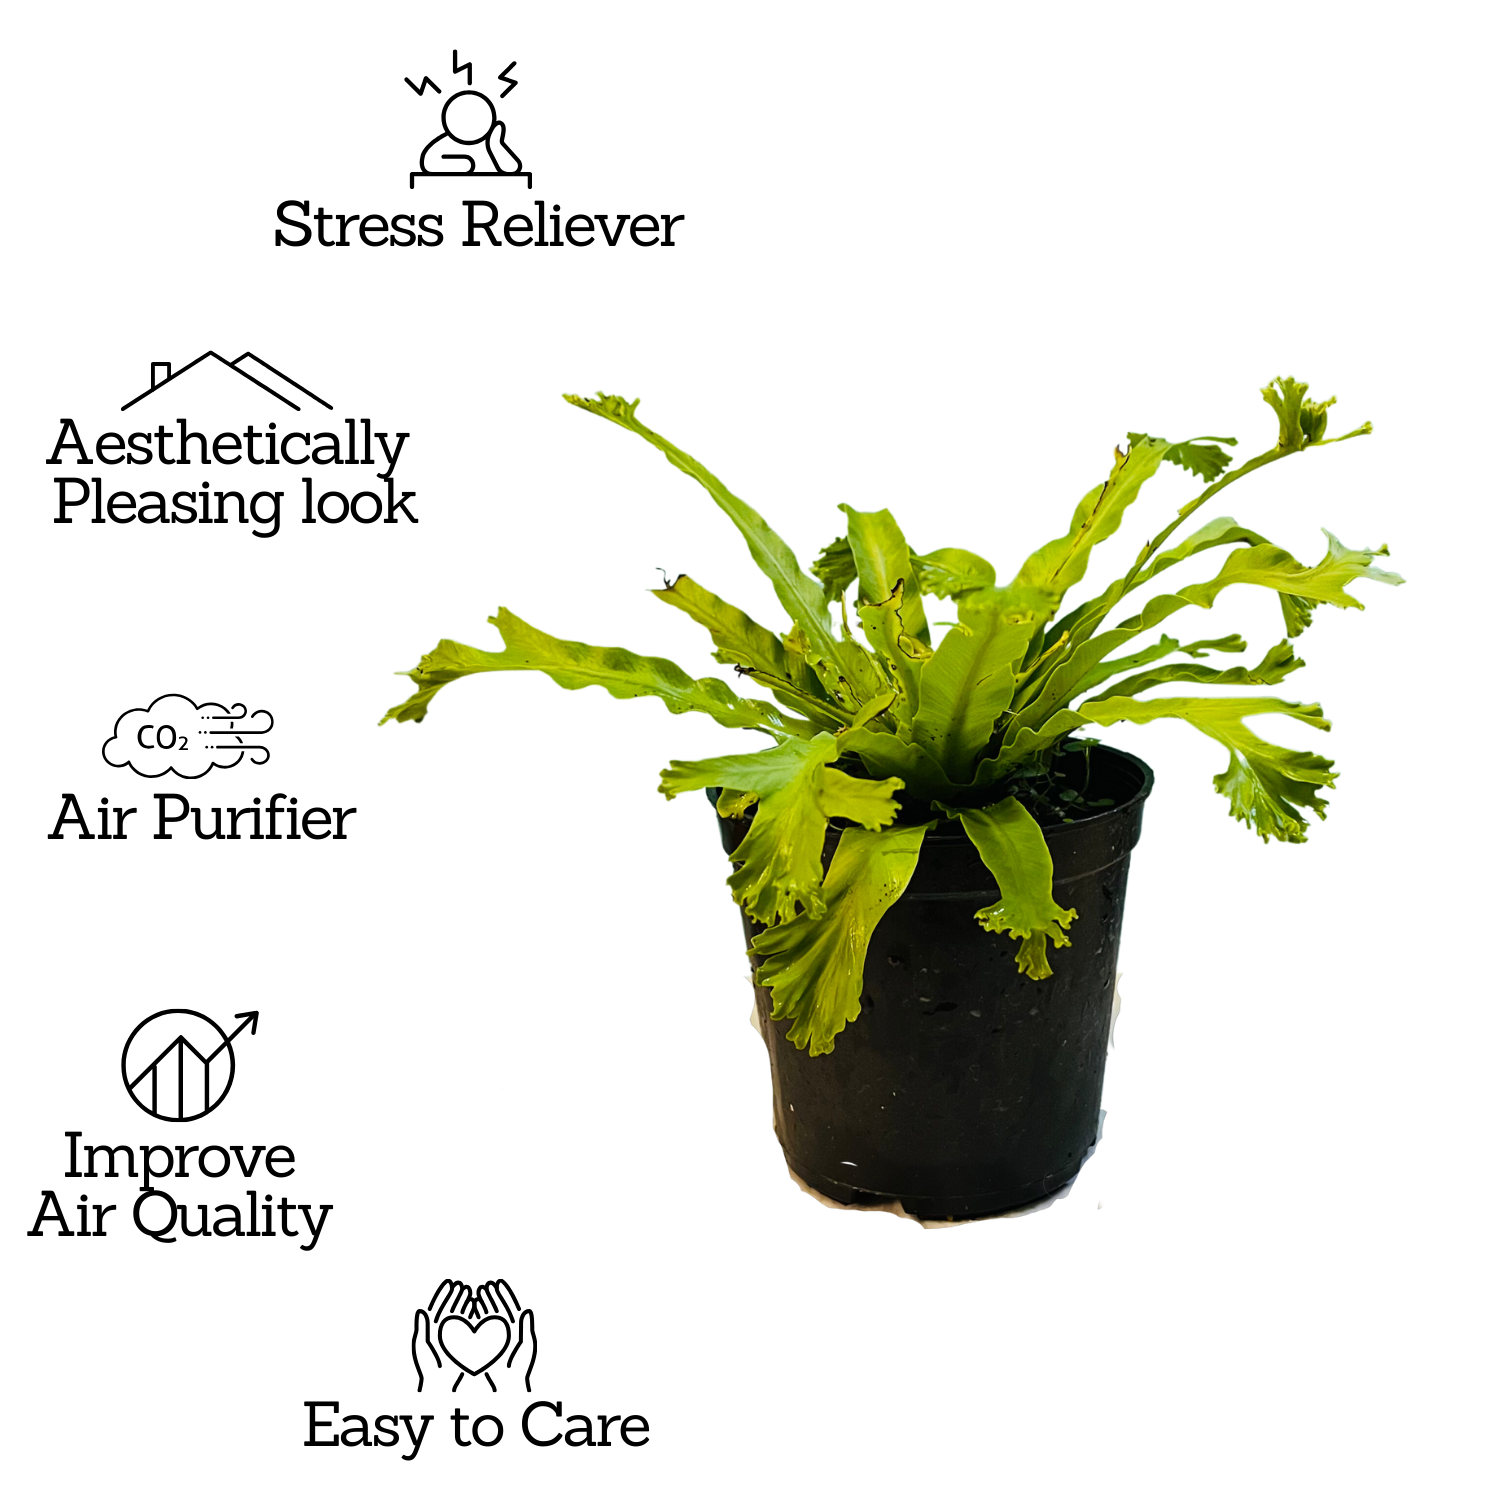 Asplenium Nidus Crissie Fern- Live Plant In 5 Inch Pot (Home & Garden)